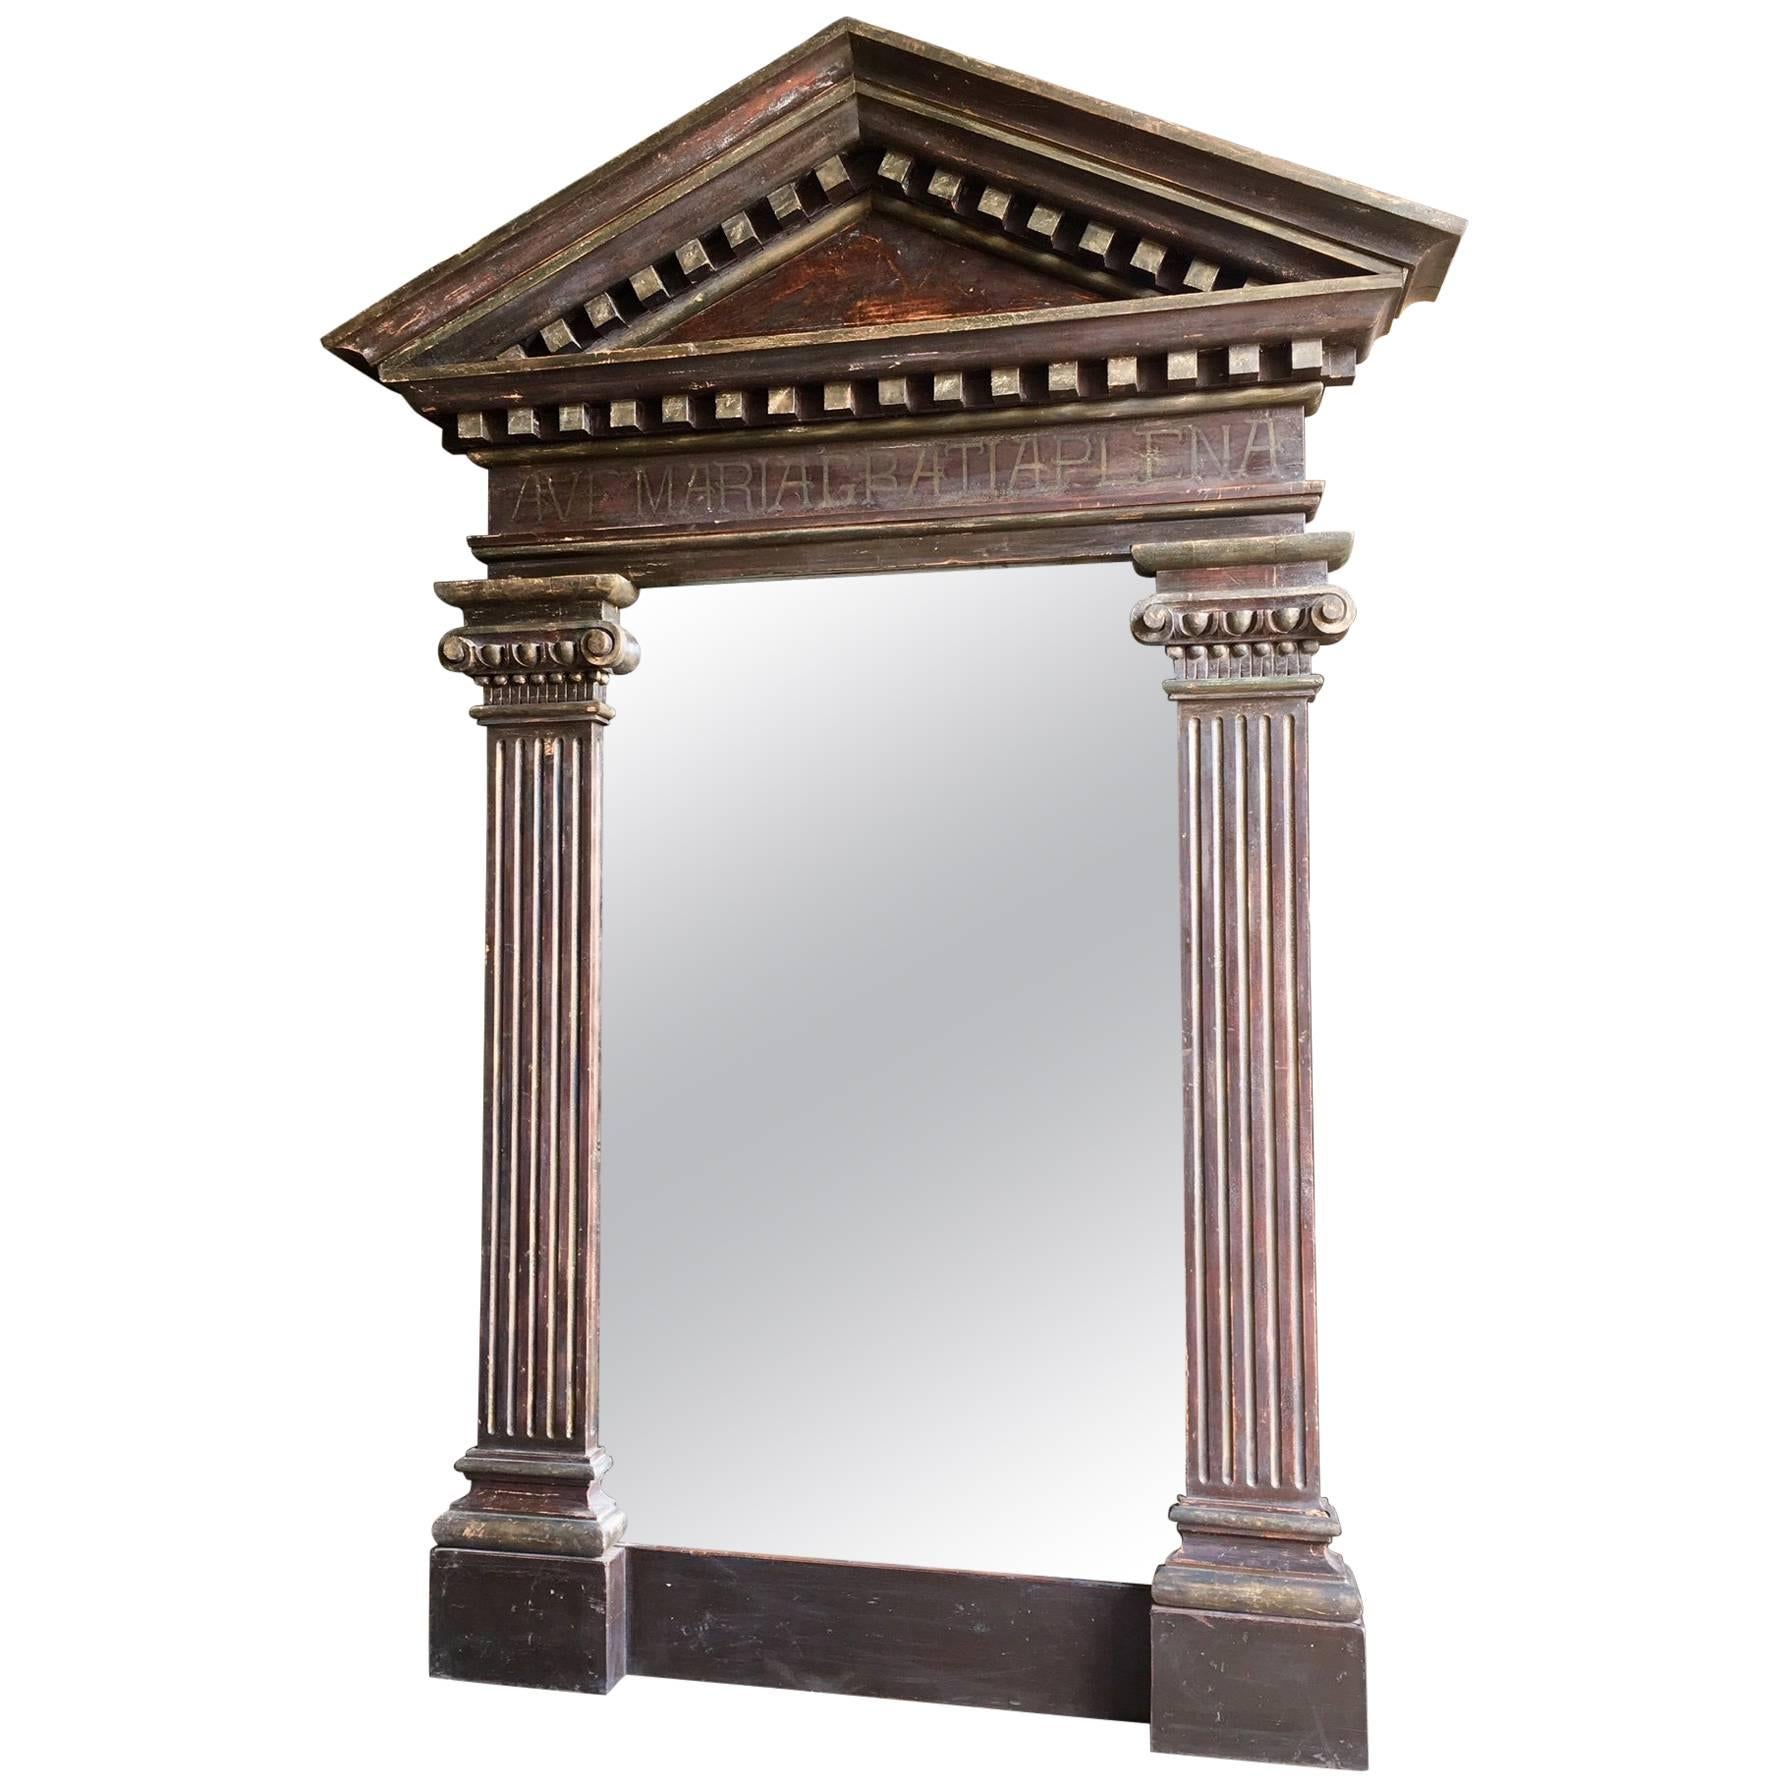 Très grand miroir dans un cadre architectural décoratif ancien